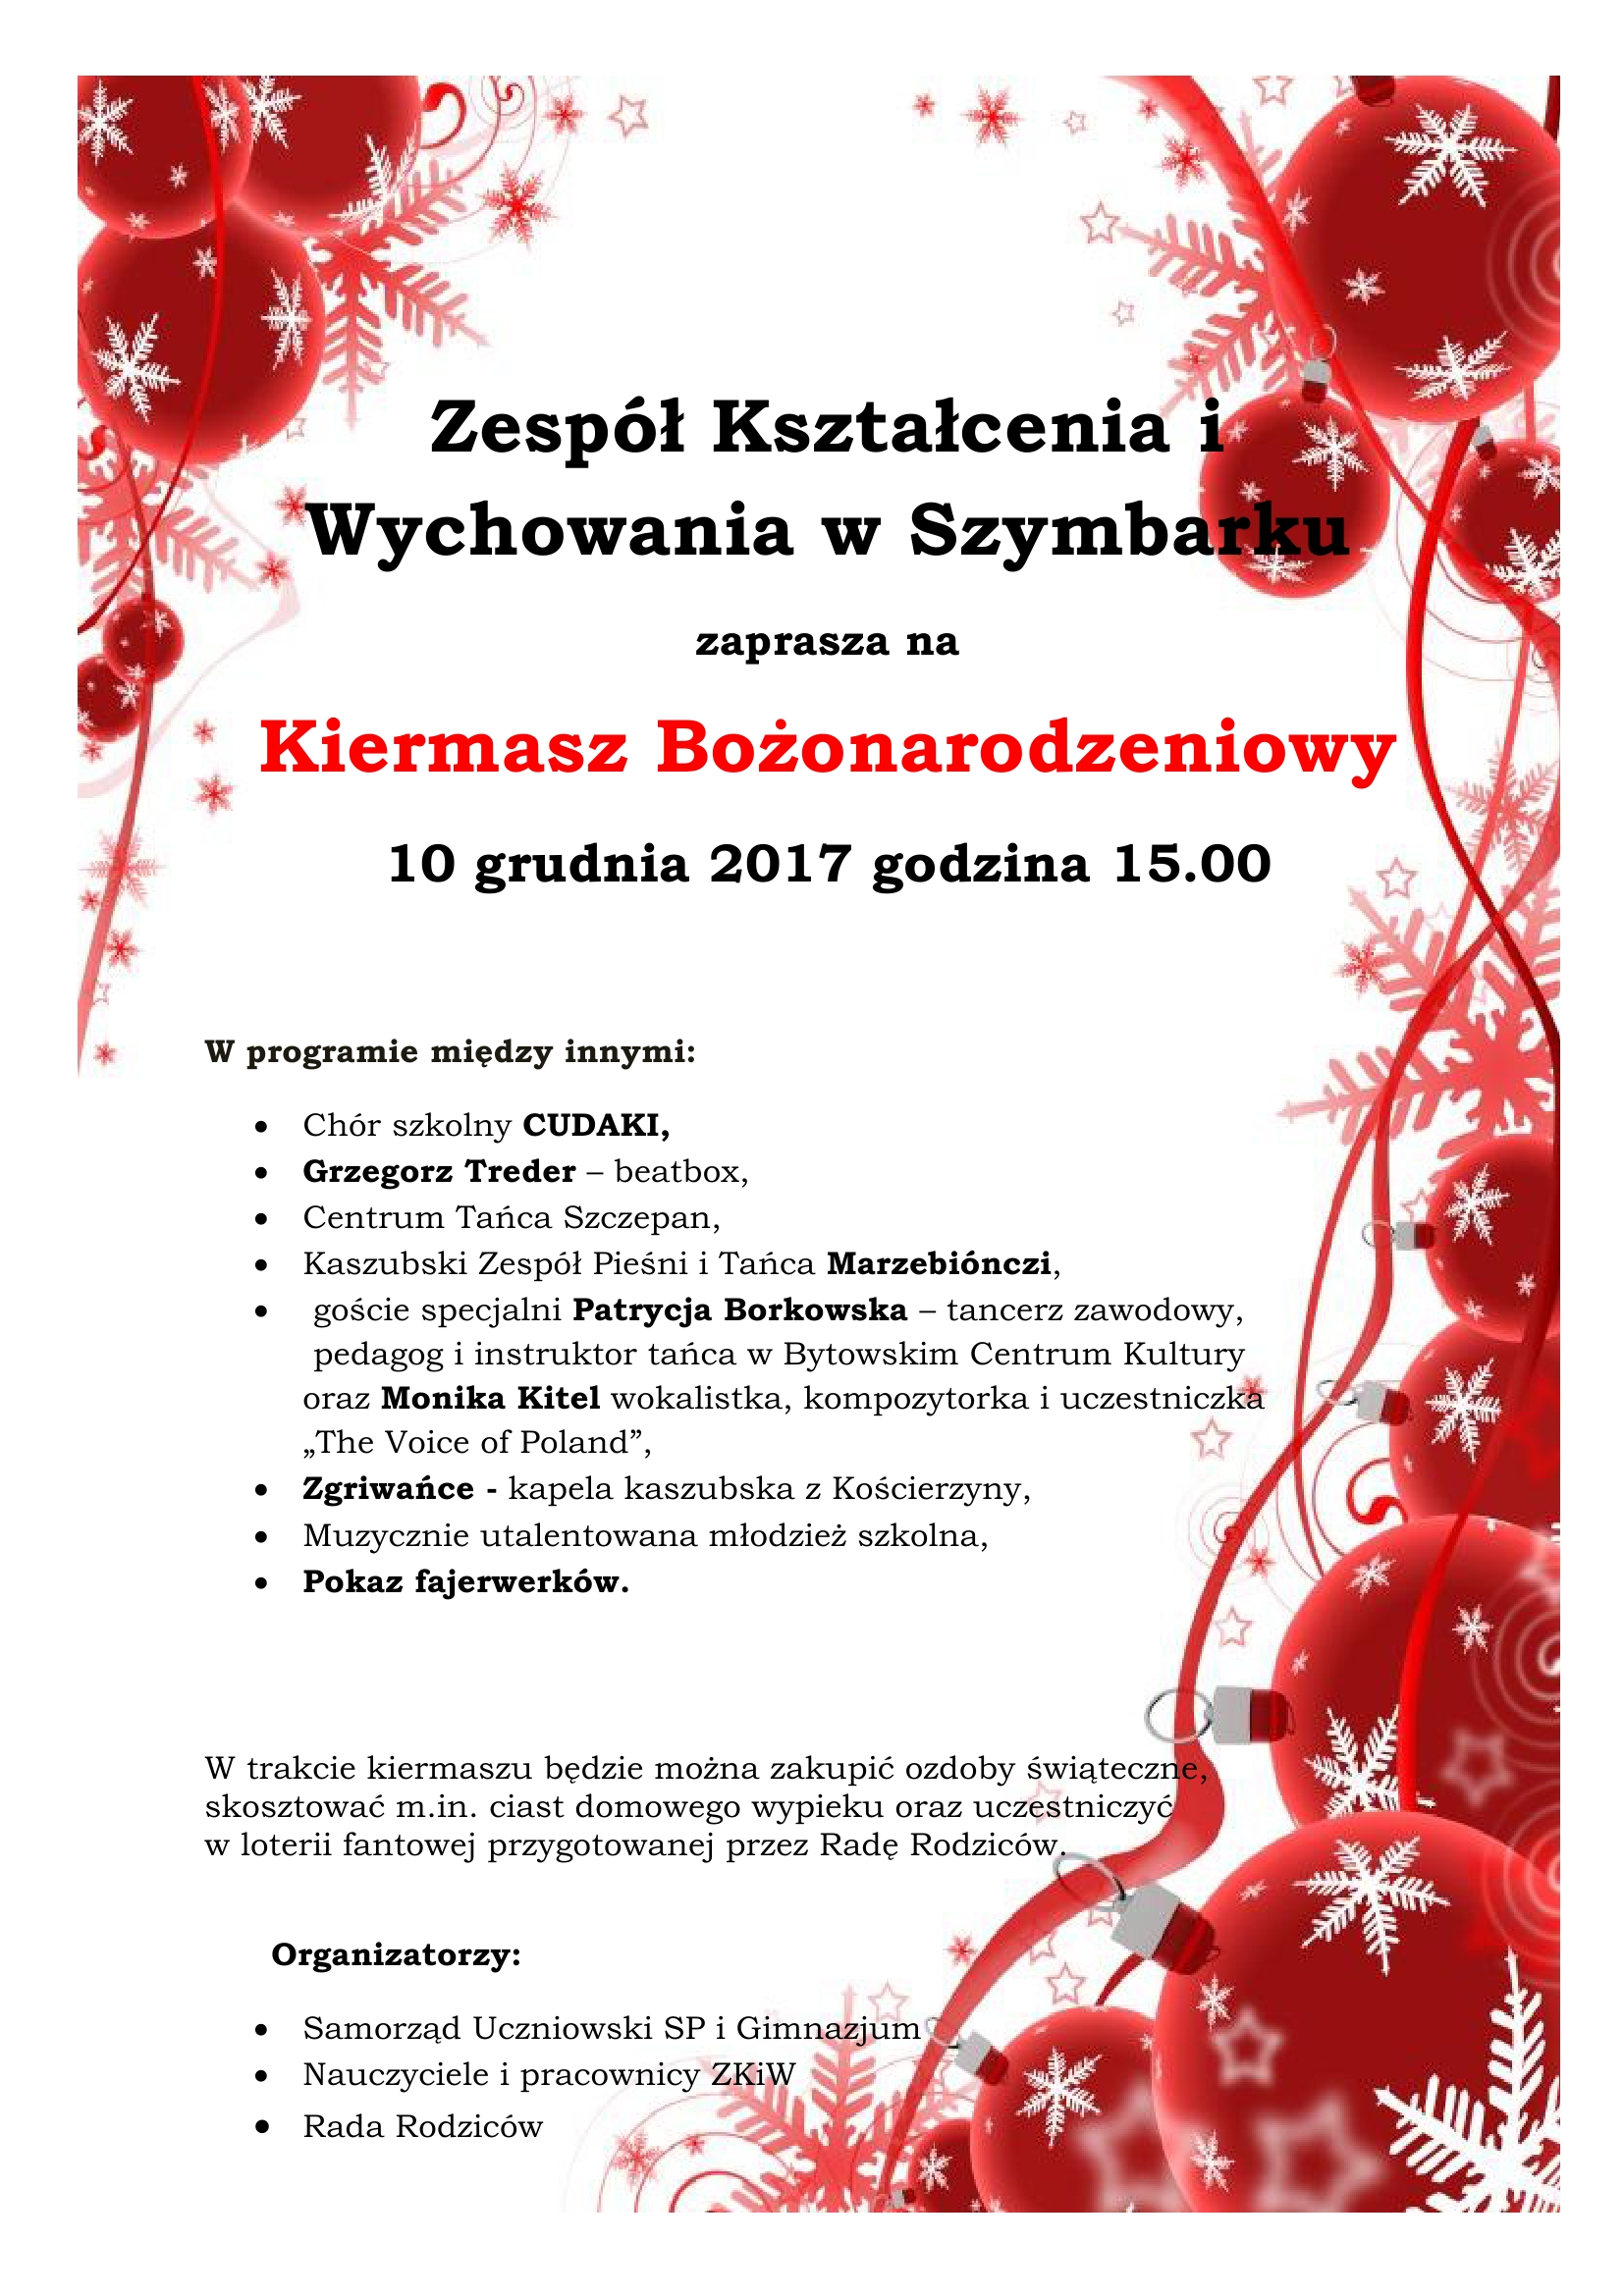 Zespół Kształcenia i Wychowania w Szymbarku zaprasza na Kiermasz Bożonarodzeniowy